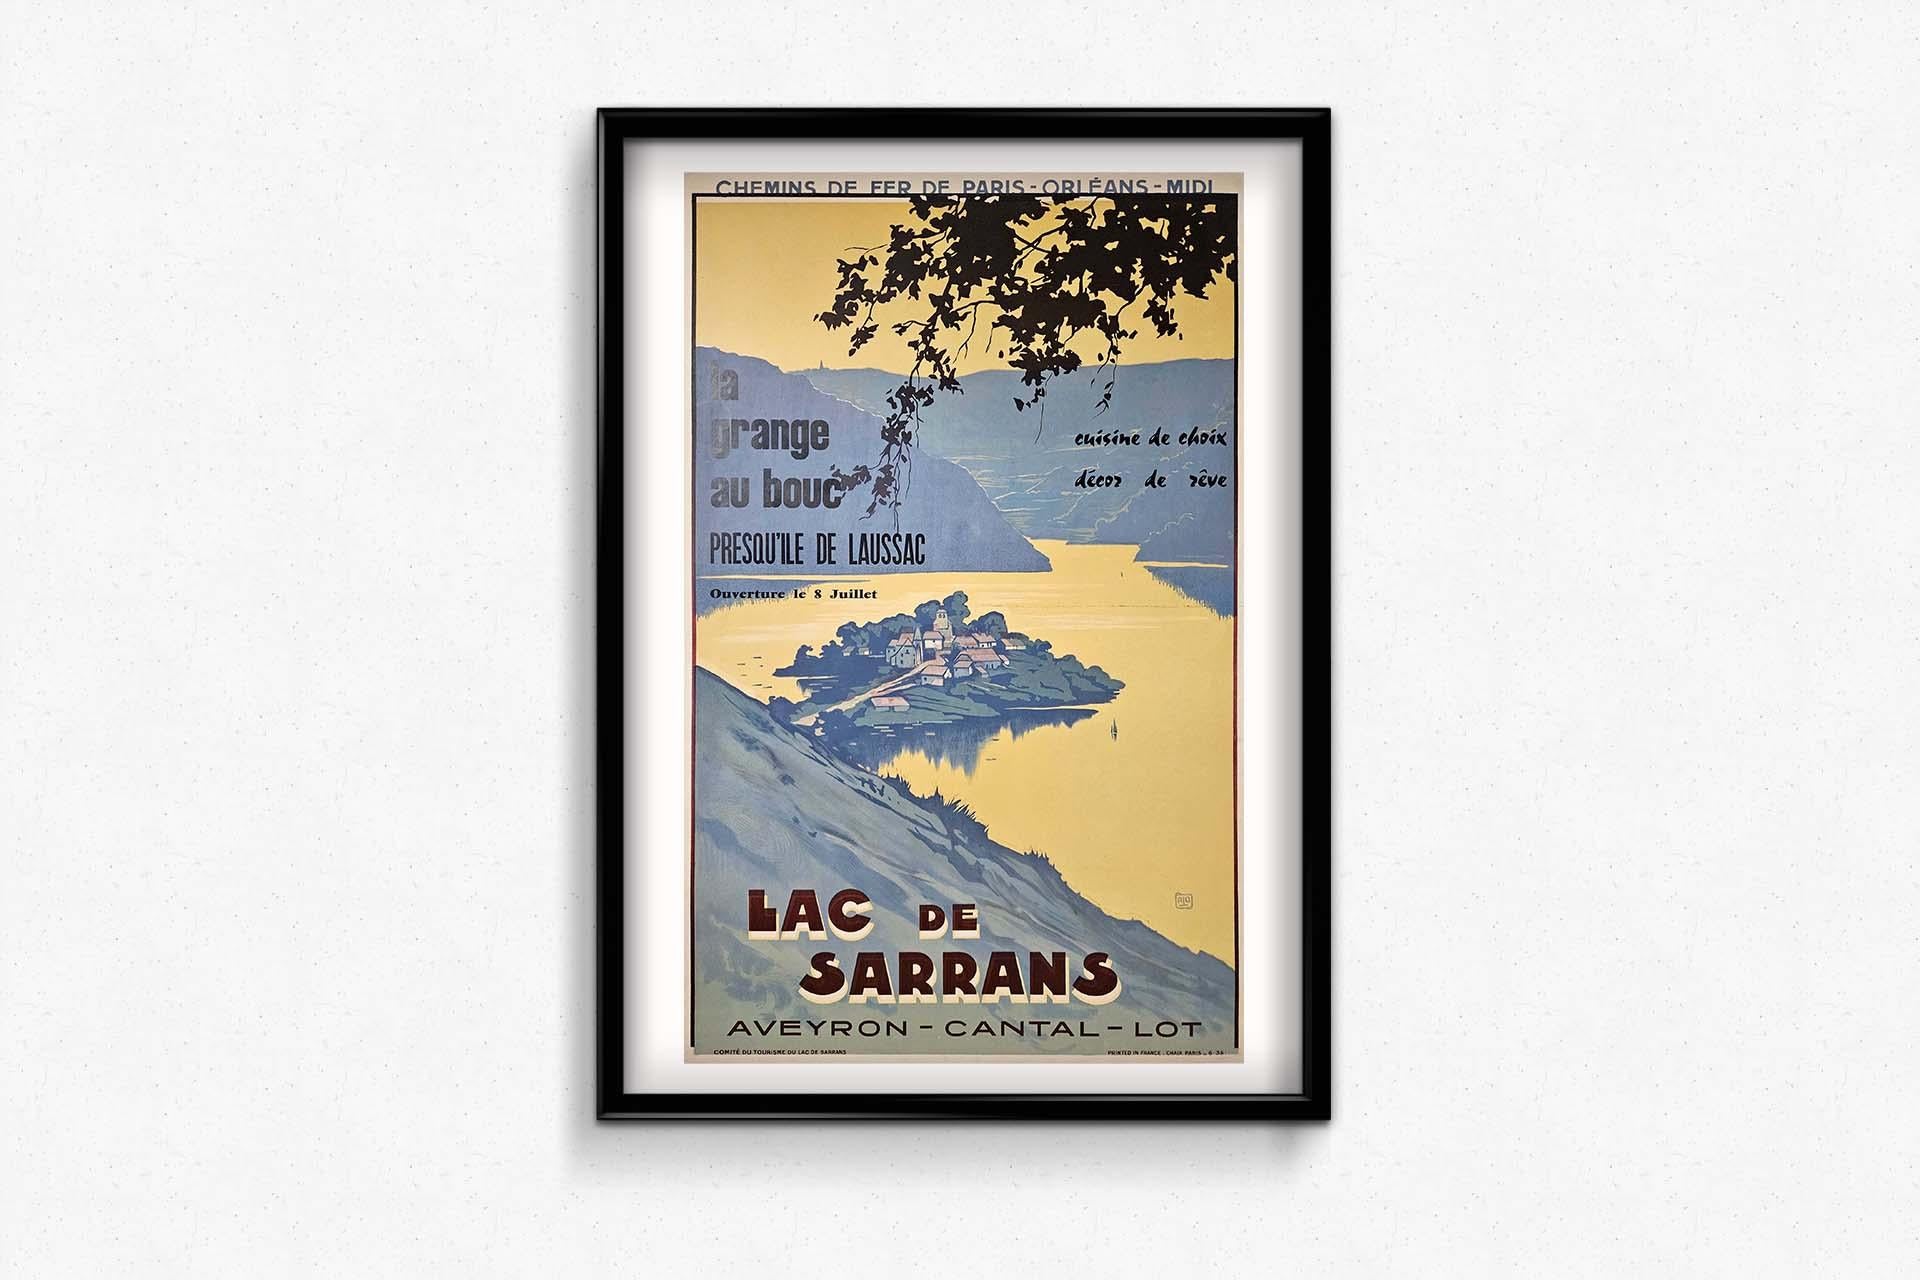 1935 original poster by Alo Chemins de fer de Paris Orléans Midi Lac de Sarrans - Art Deco Print by Charles-Jean Hallo (ALO)